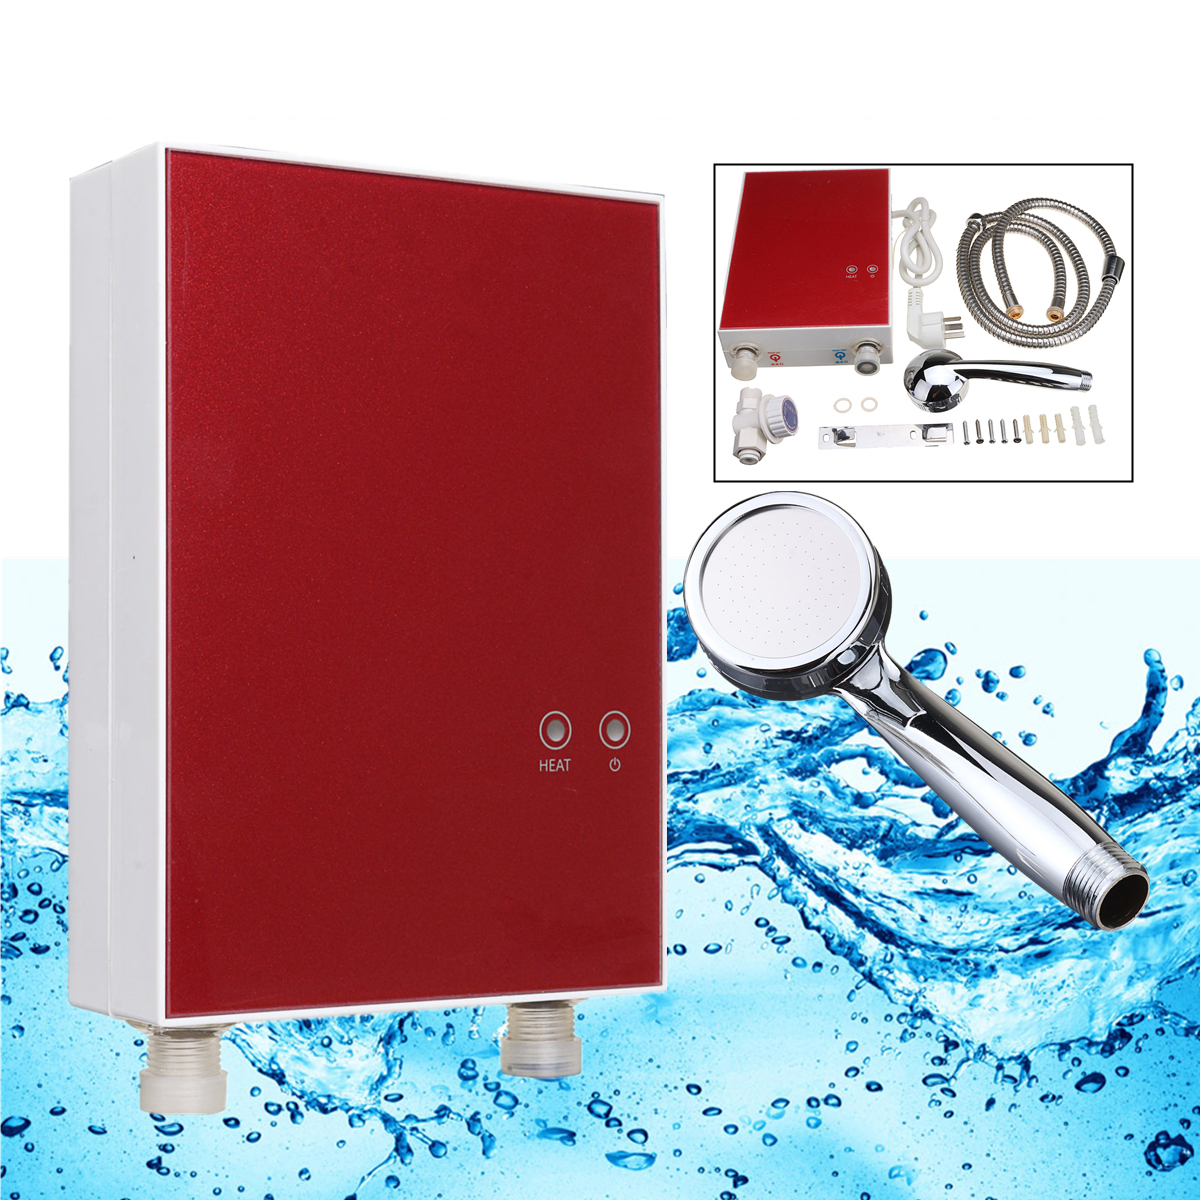 

3500W 220V Tankless Мгновенная горячая вода Нагреватель Кухня Электрическая система горячего водоснабжения